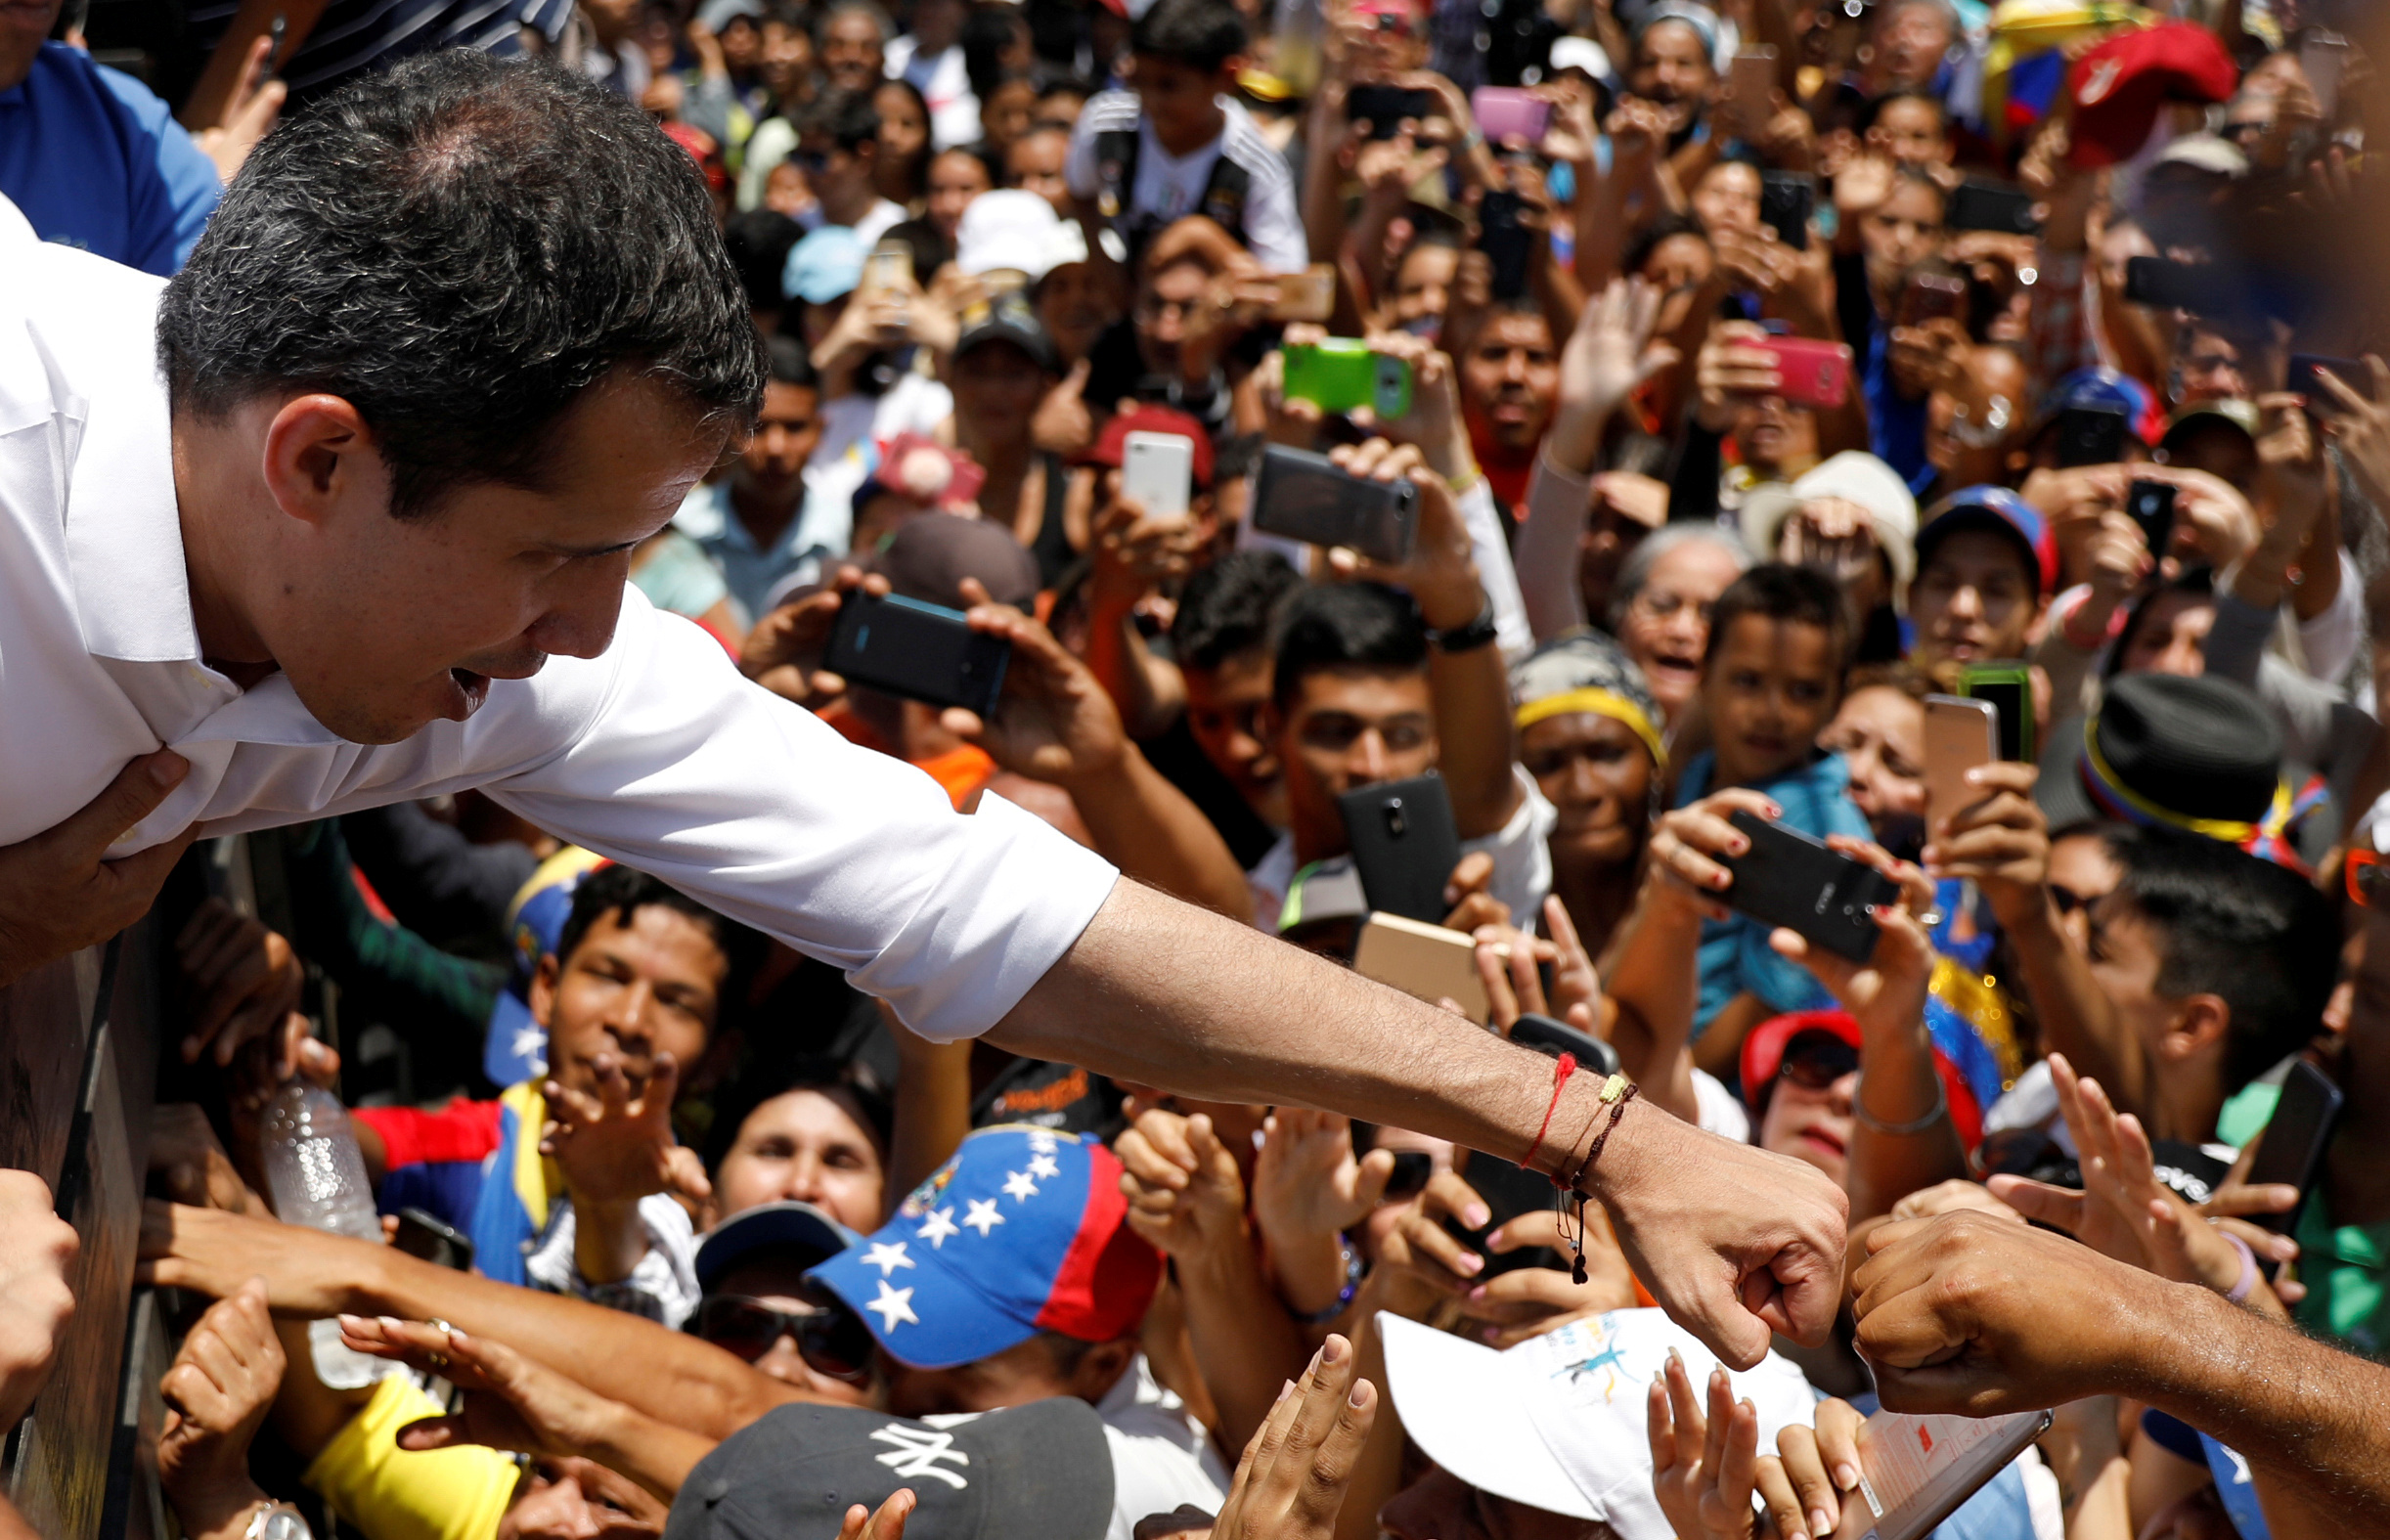 Guaidó comienza a ganar adeptos entre los venezolanos descontentos y militares